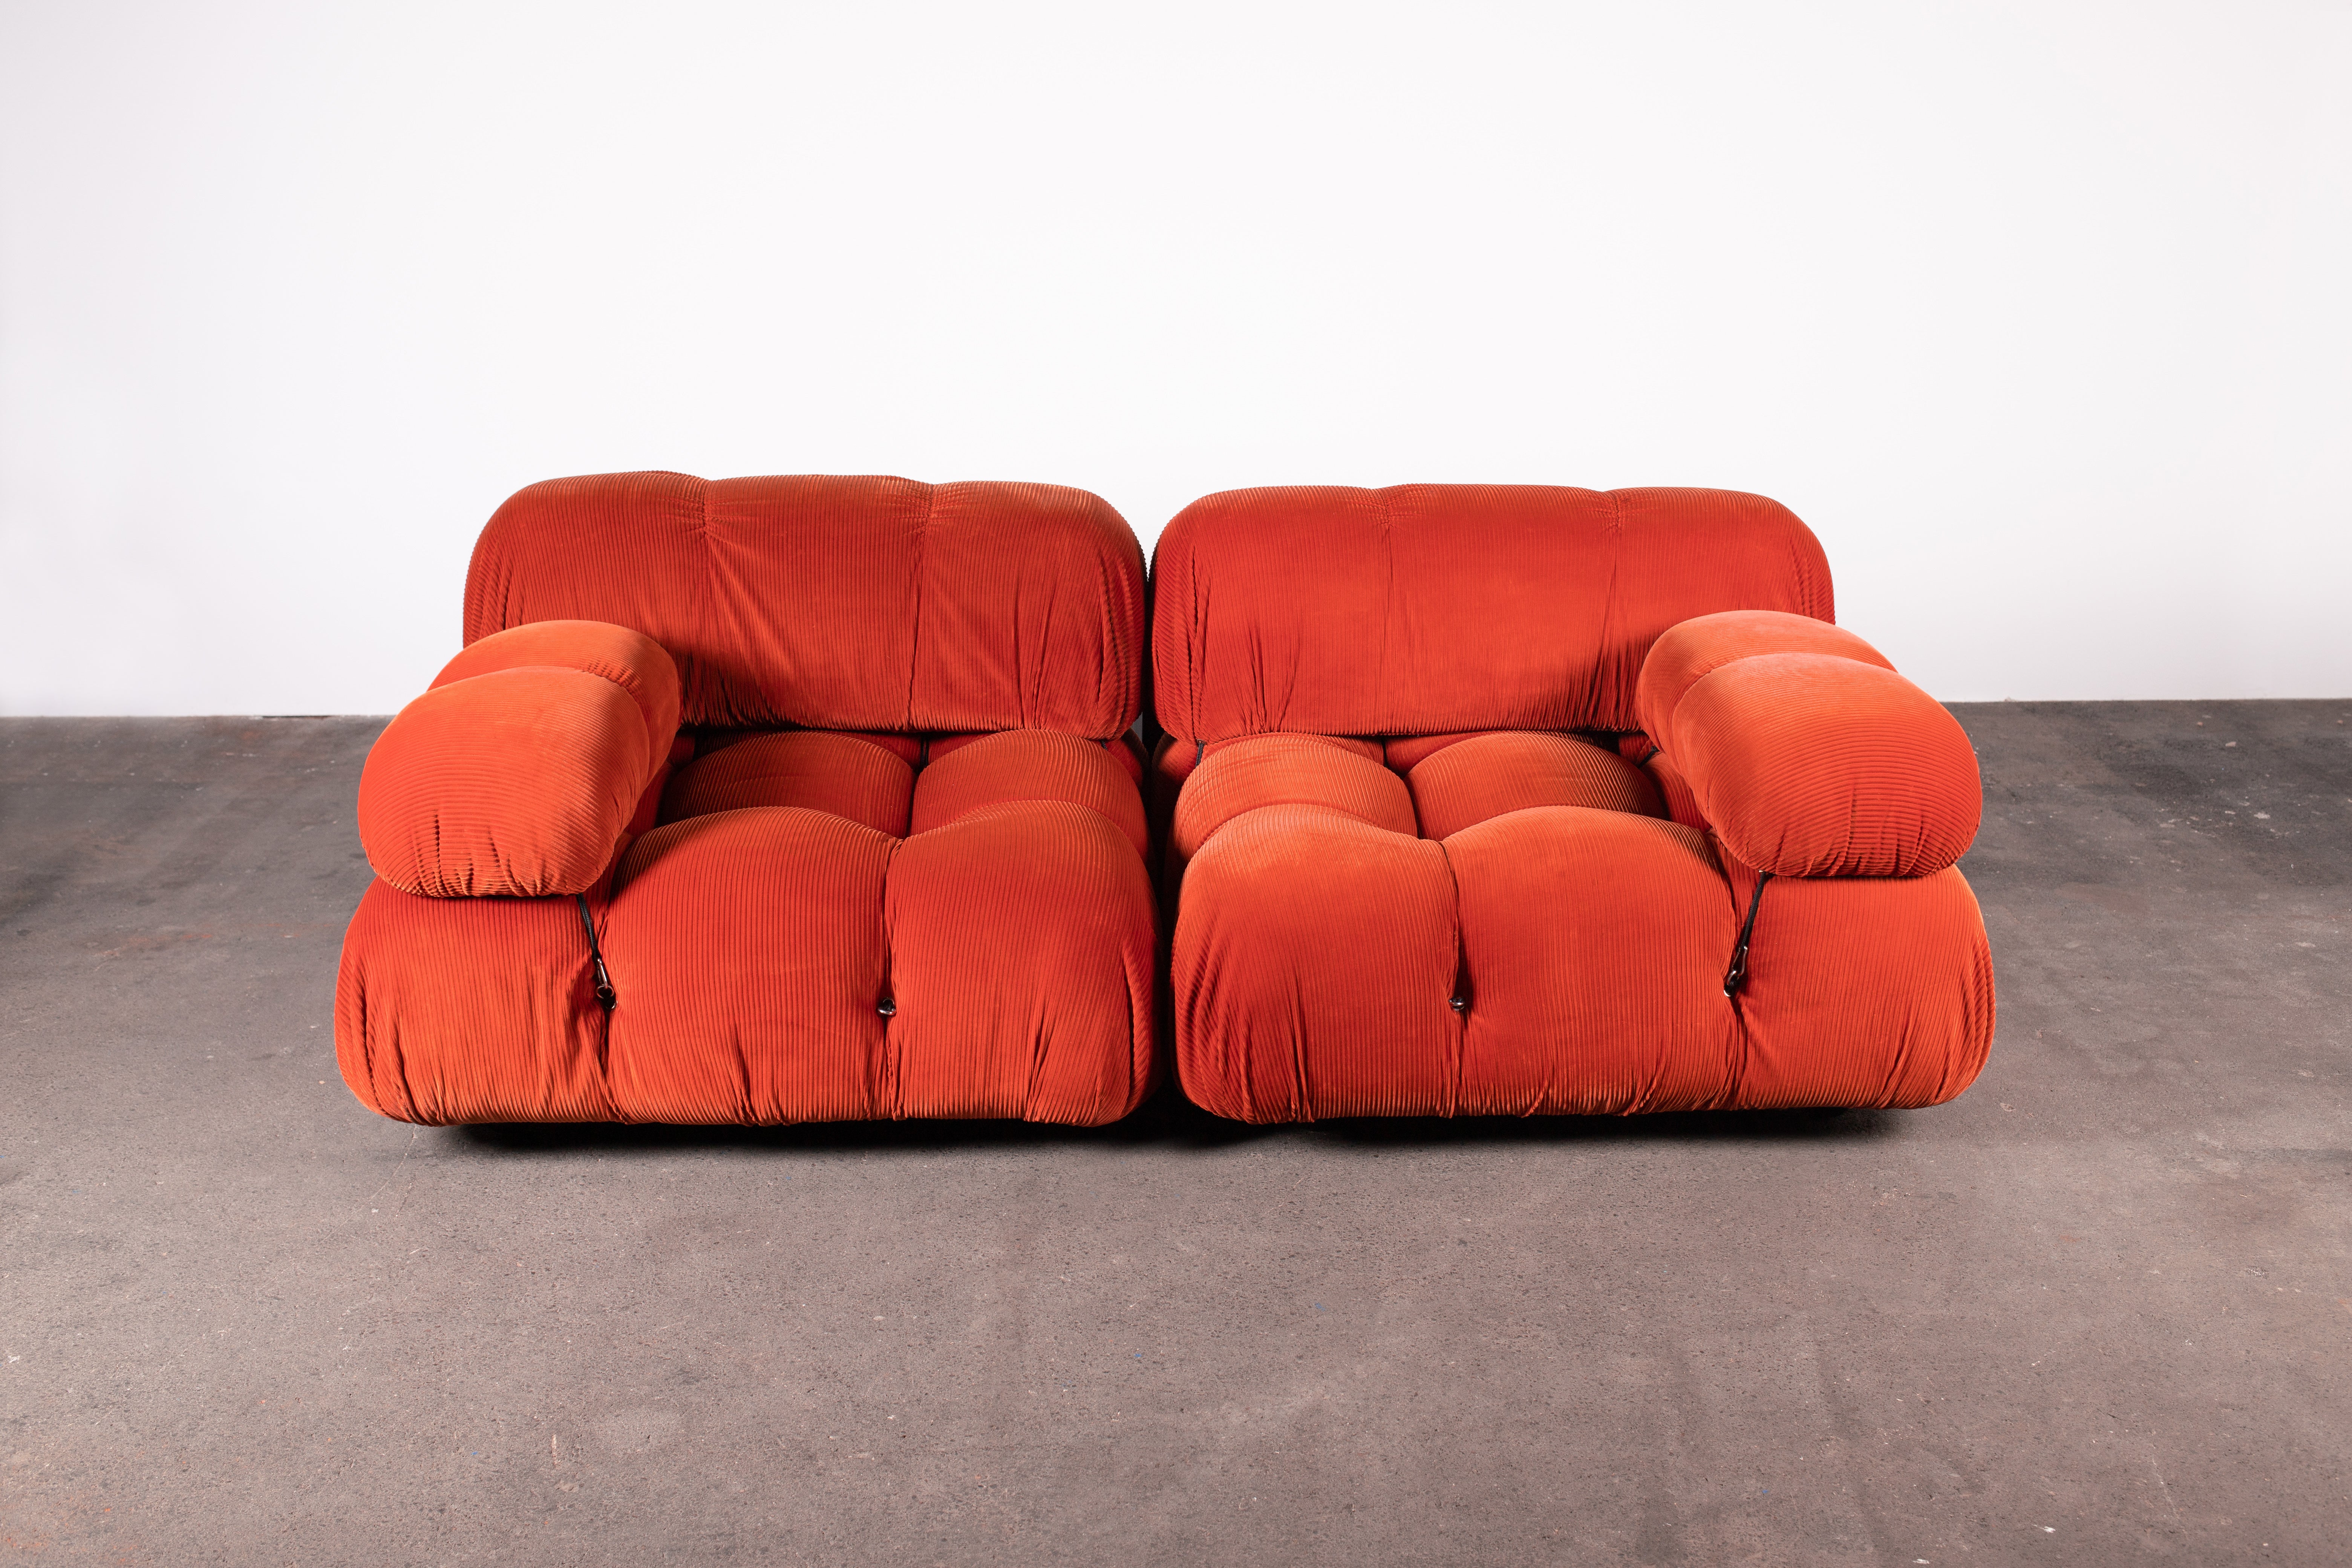 Original early B&B Italia Organic Modern 2-piece Camaleonda sectional sofa by Mario Bellini in orange cord fabric. Formations de deux chaises longues du plus grand format 3x3 de la série. Les deux sont dotés d'un dossier et d'un accoudoir. Les